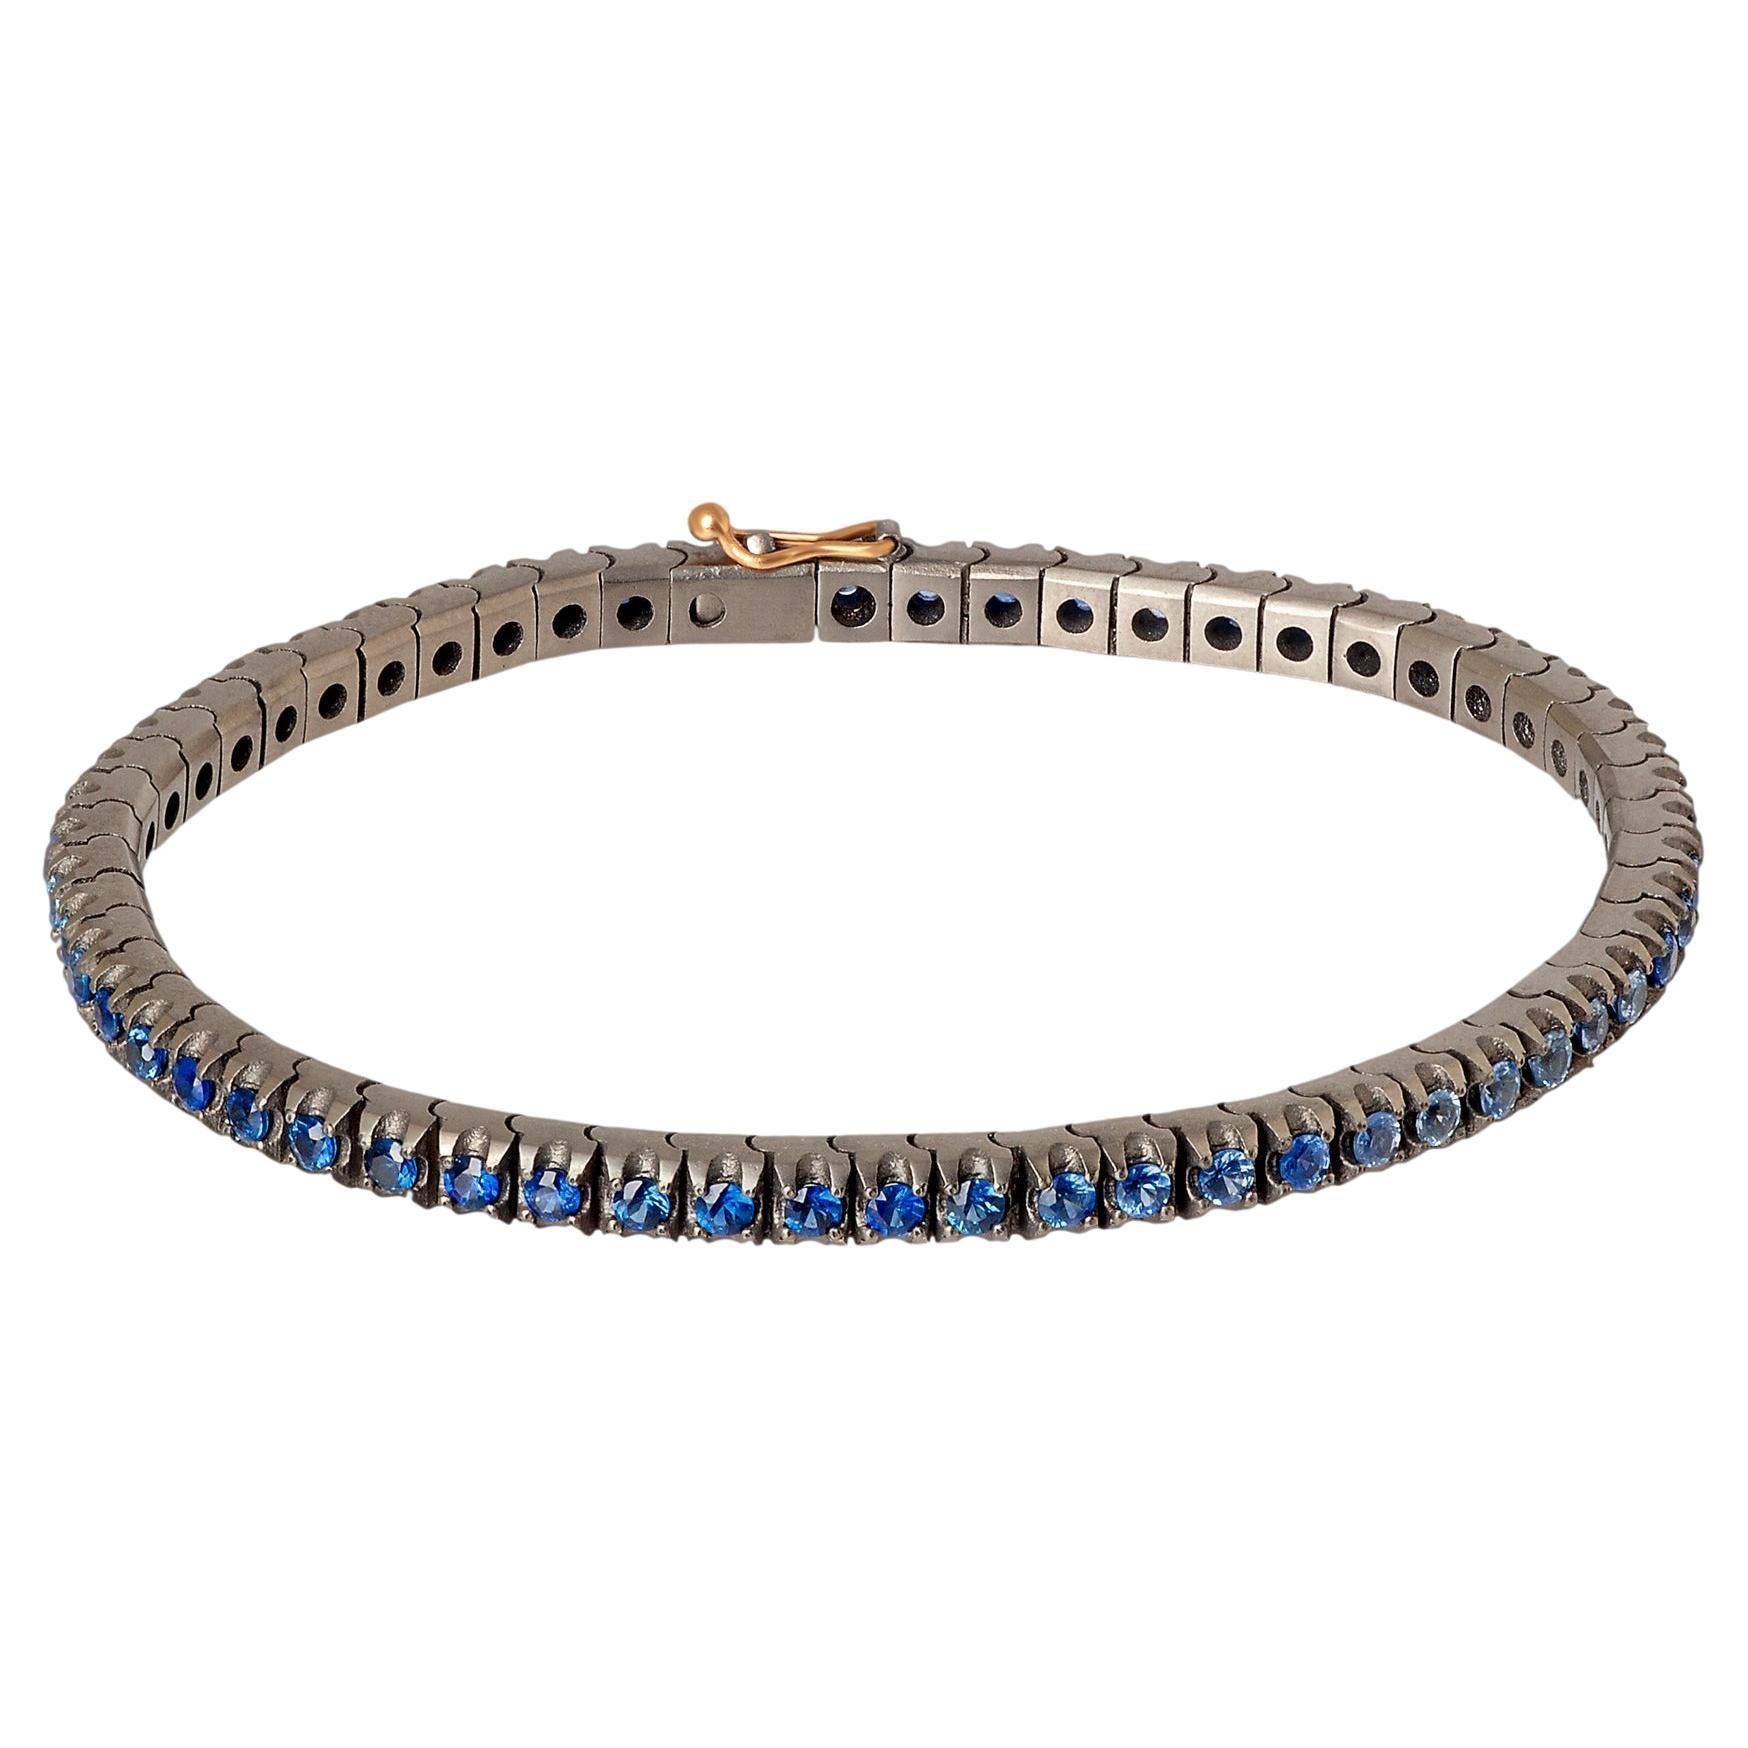 Bracelet de tennis Classic en titane, or rouge 18kt et saphirs bleus nuancés